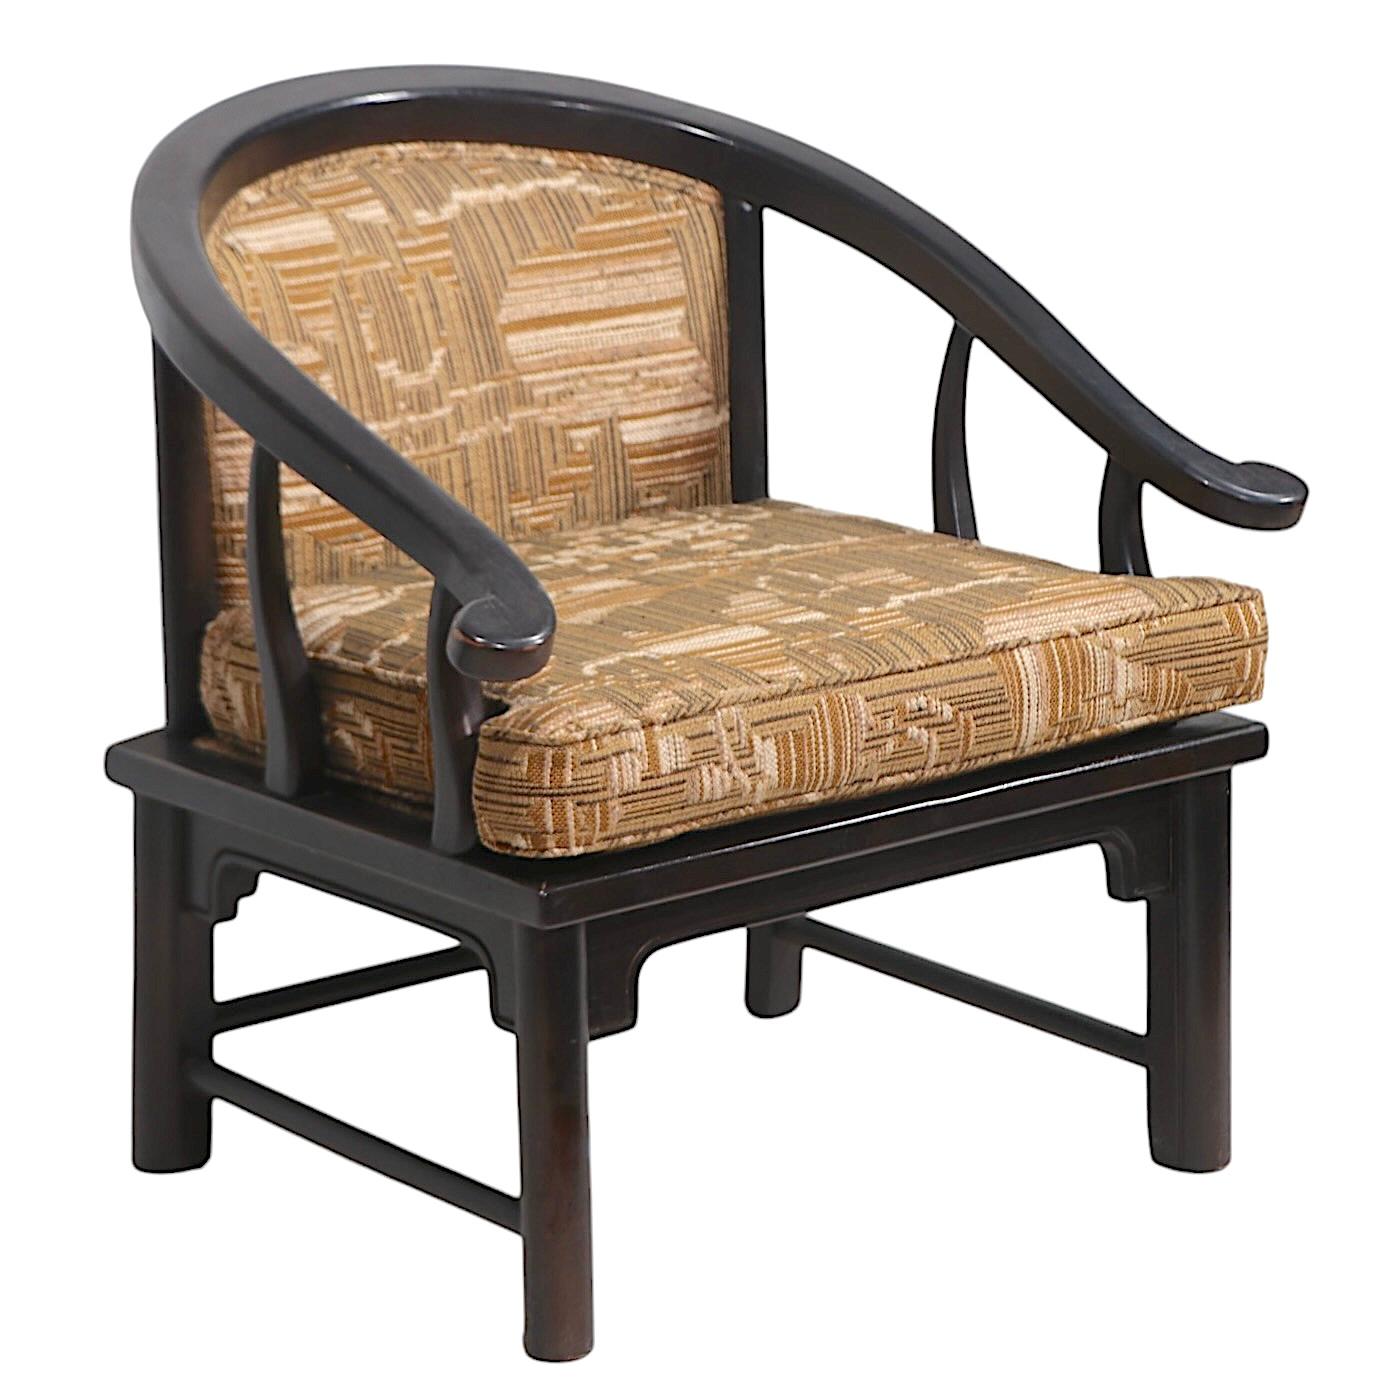 Chaise longue d'influence chinoise, de style fer à cheval, chic et sophistiquée, attribuée au  Century Furniture Co. dans le style de  James Mont. La chaise présente un cadre en chêne massif, en finition brun foncé d'origine, avec un revêtement en